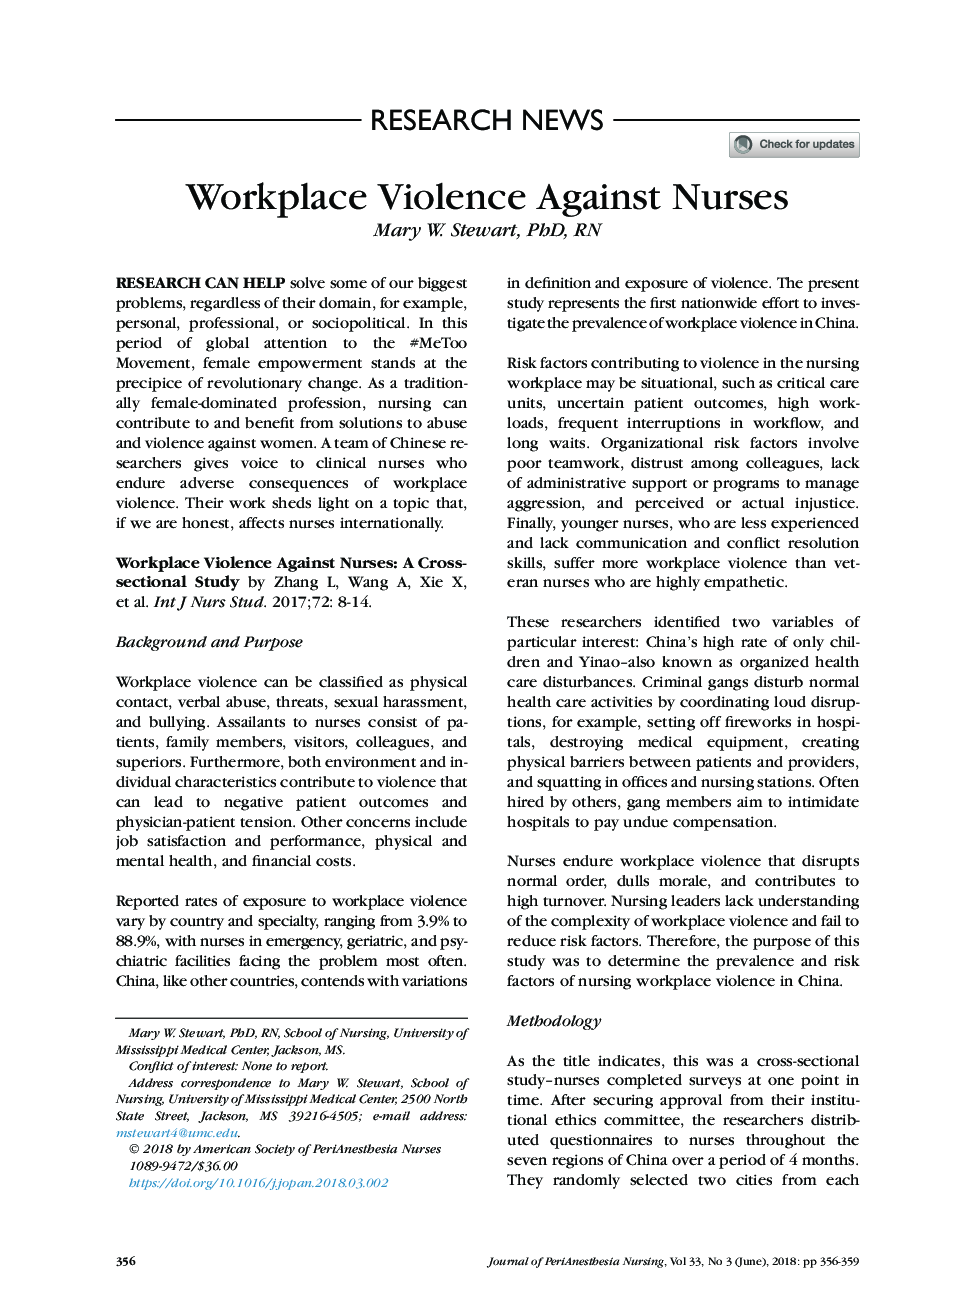 خشونت در محل کار علیه پرستاران 